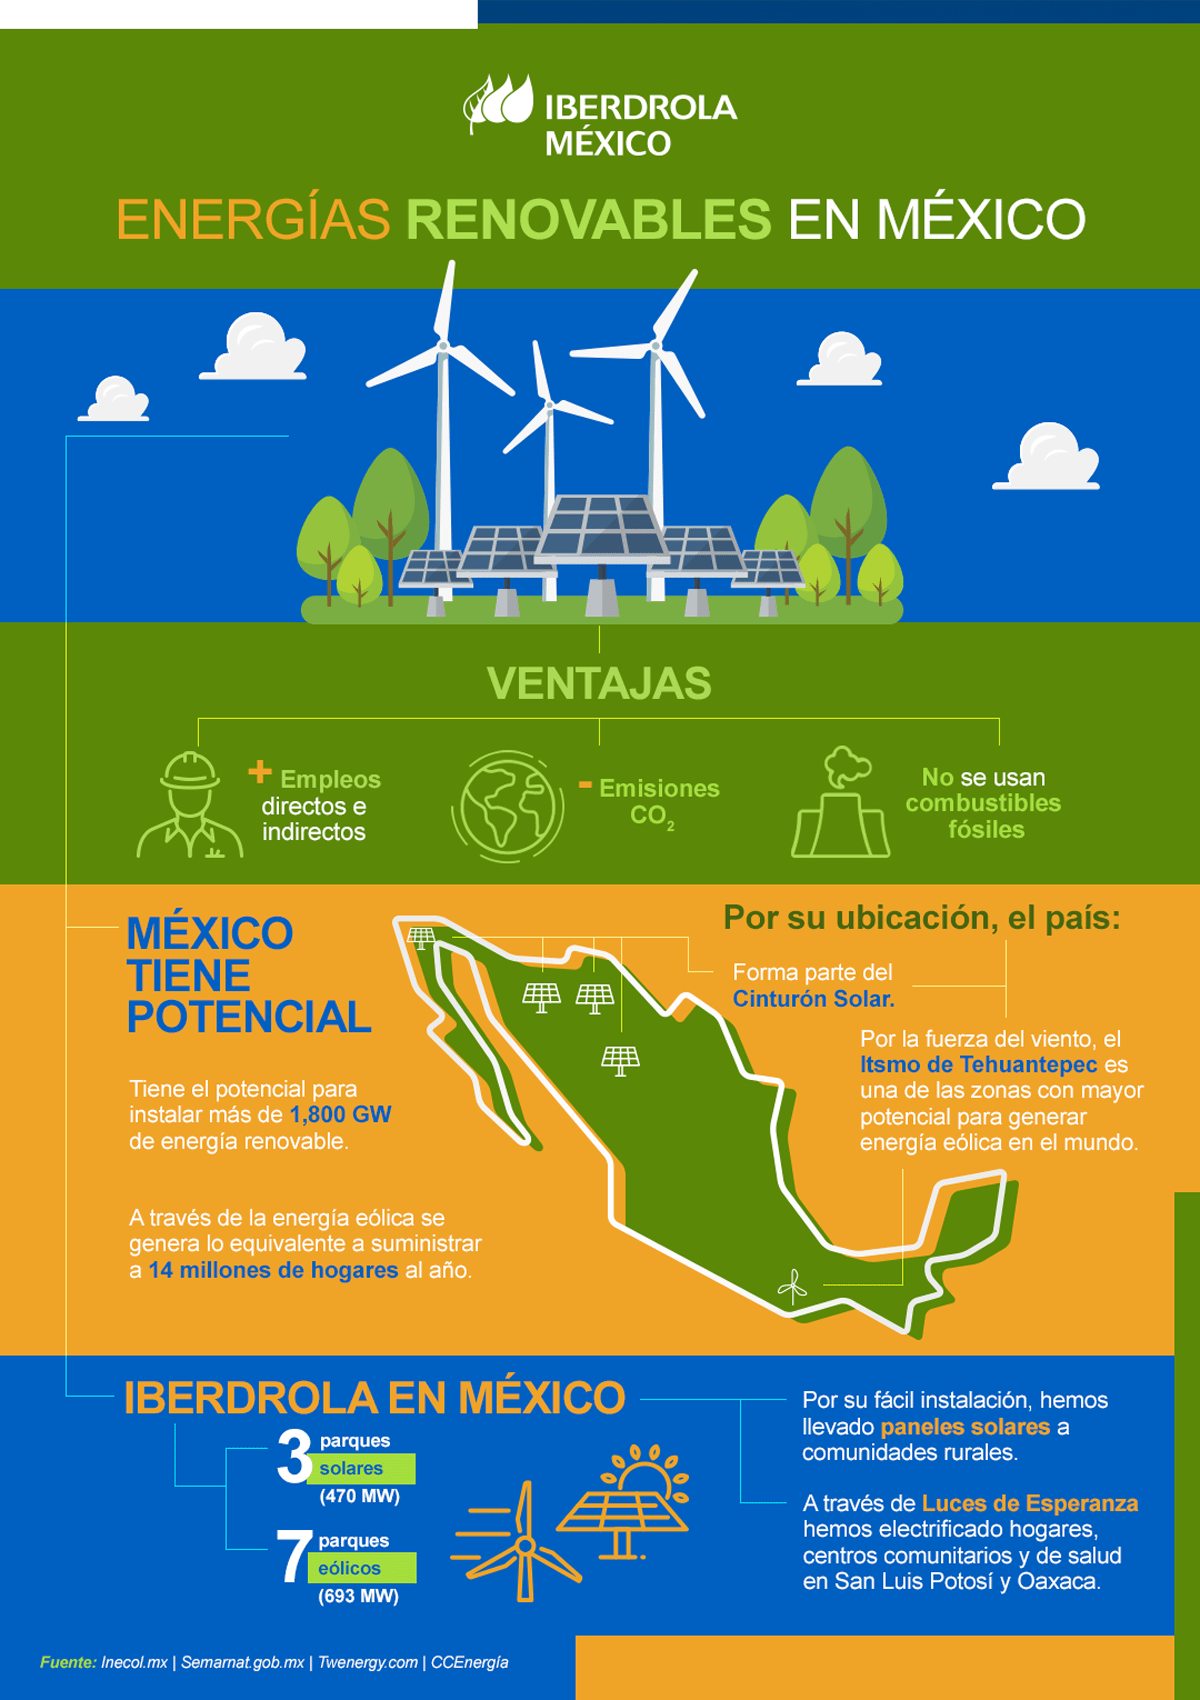 Ventajas de energías renovables en México 